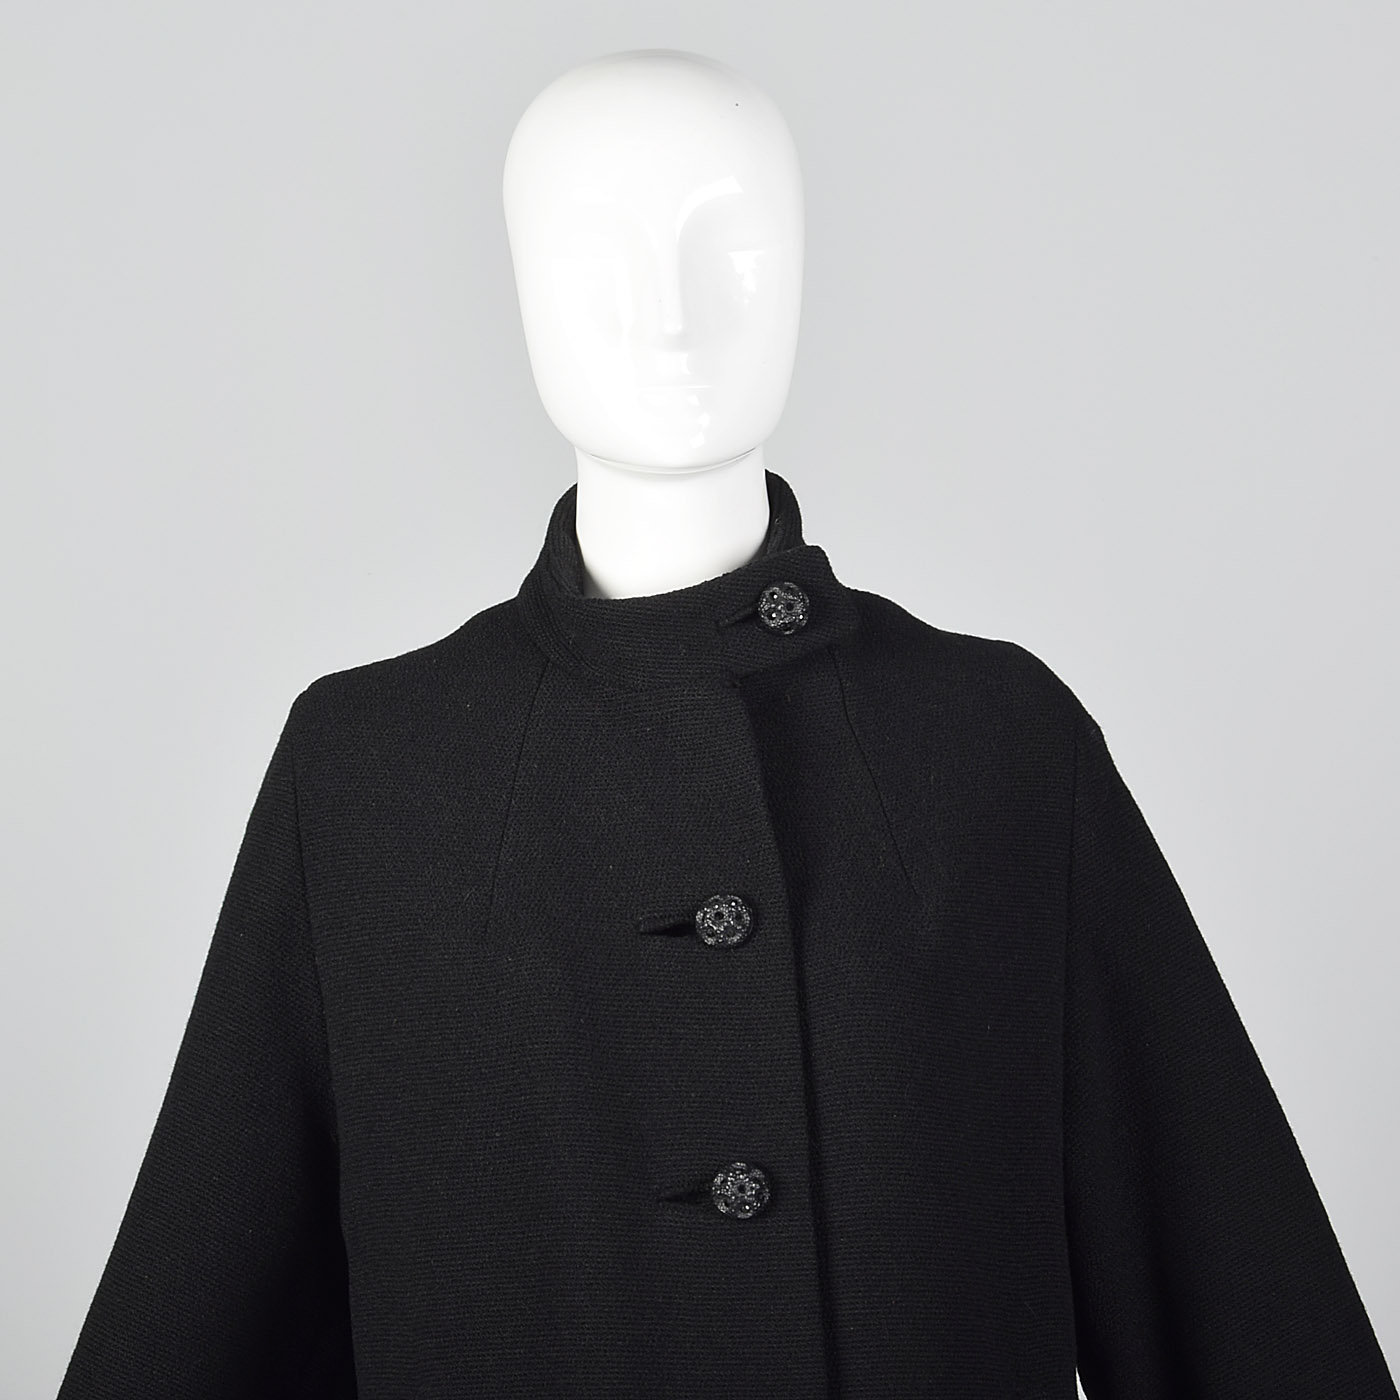 Medium Heavy Winter Coat Pockets Black Buttons Lined Standing | Etsy